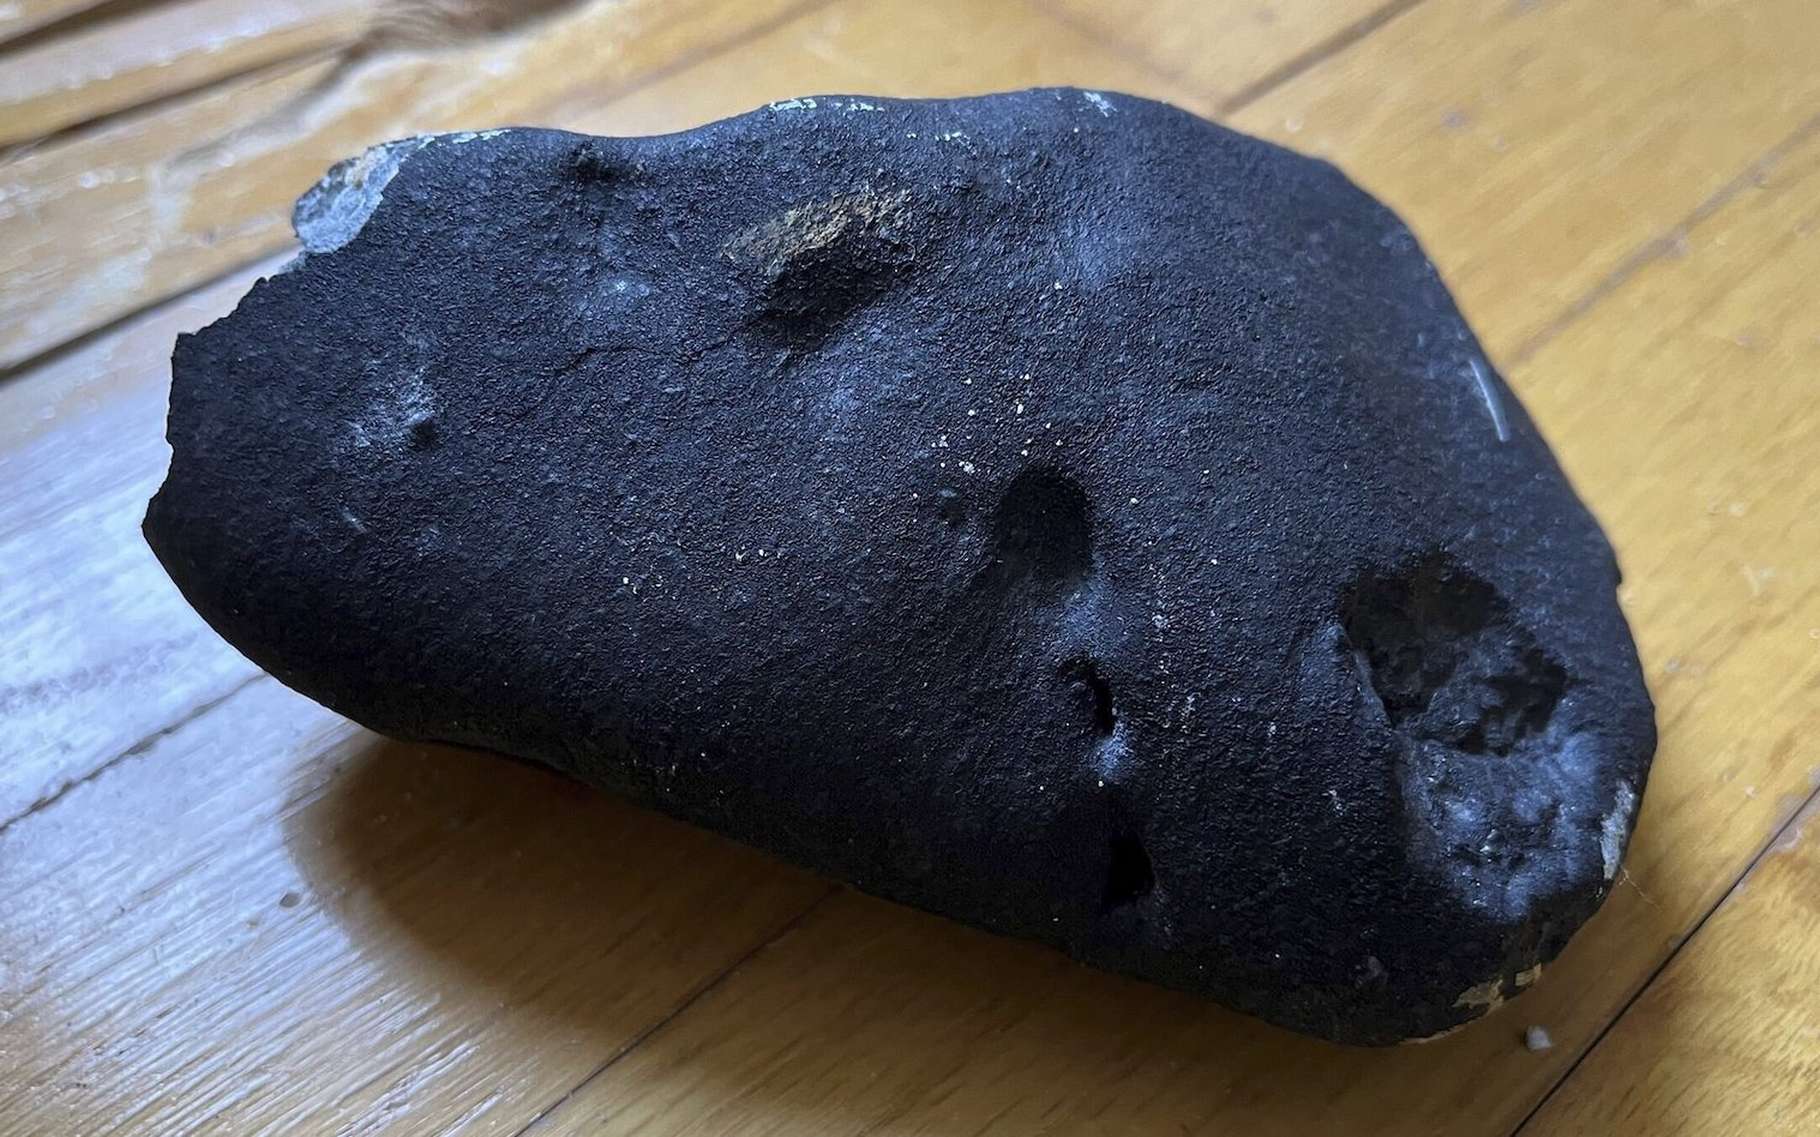 La météorite qui a traversé le toit de cette maison pourrait être un morceau de la comète de Halley !